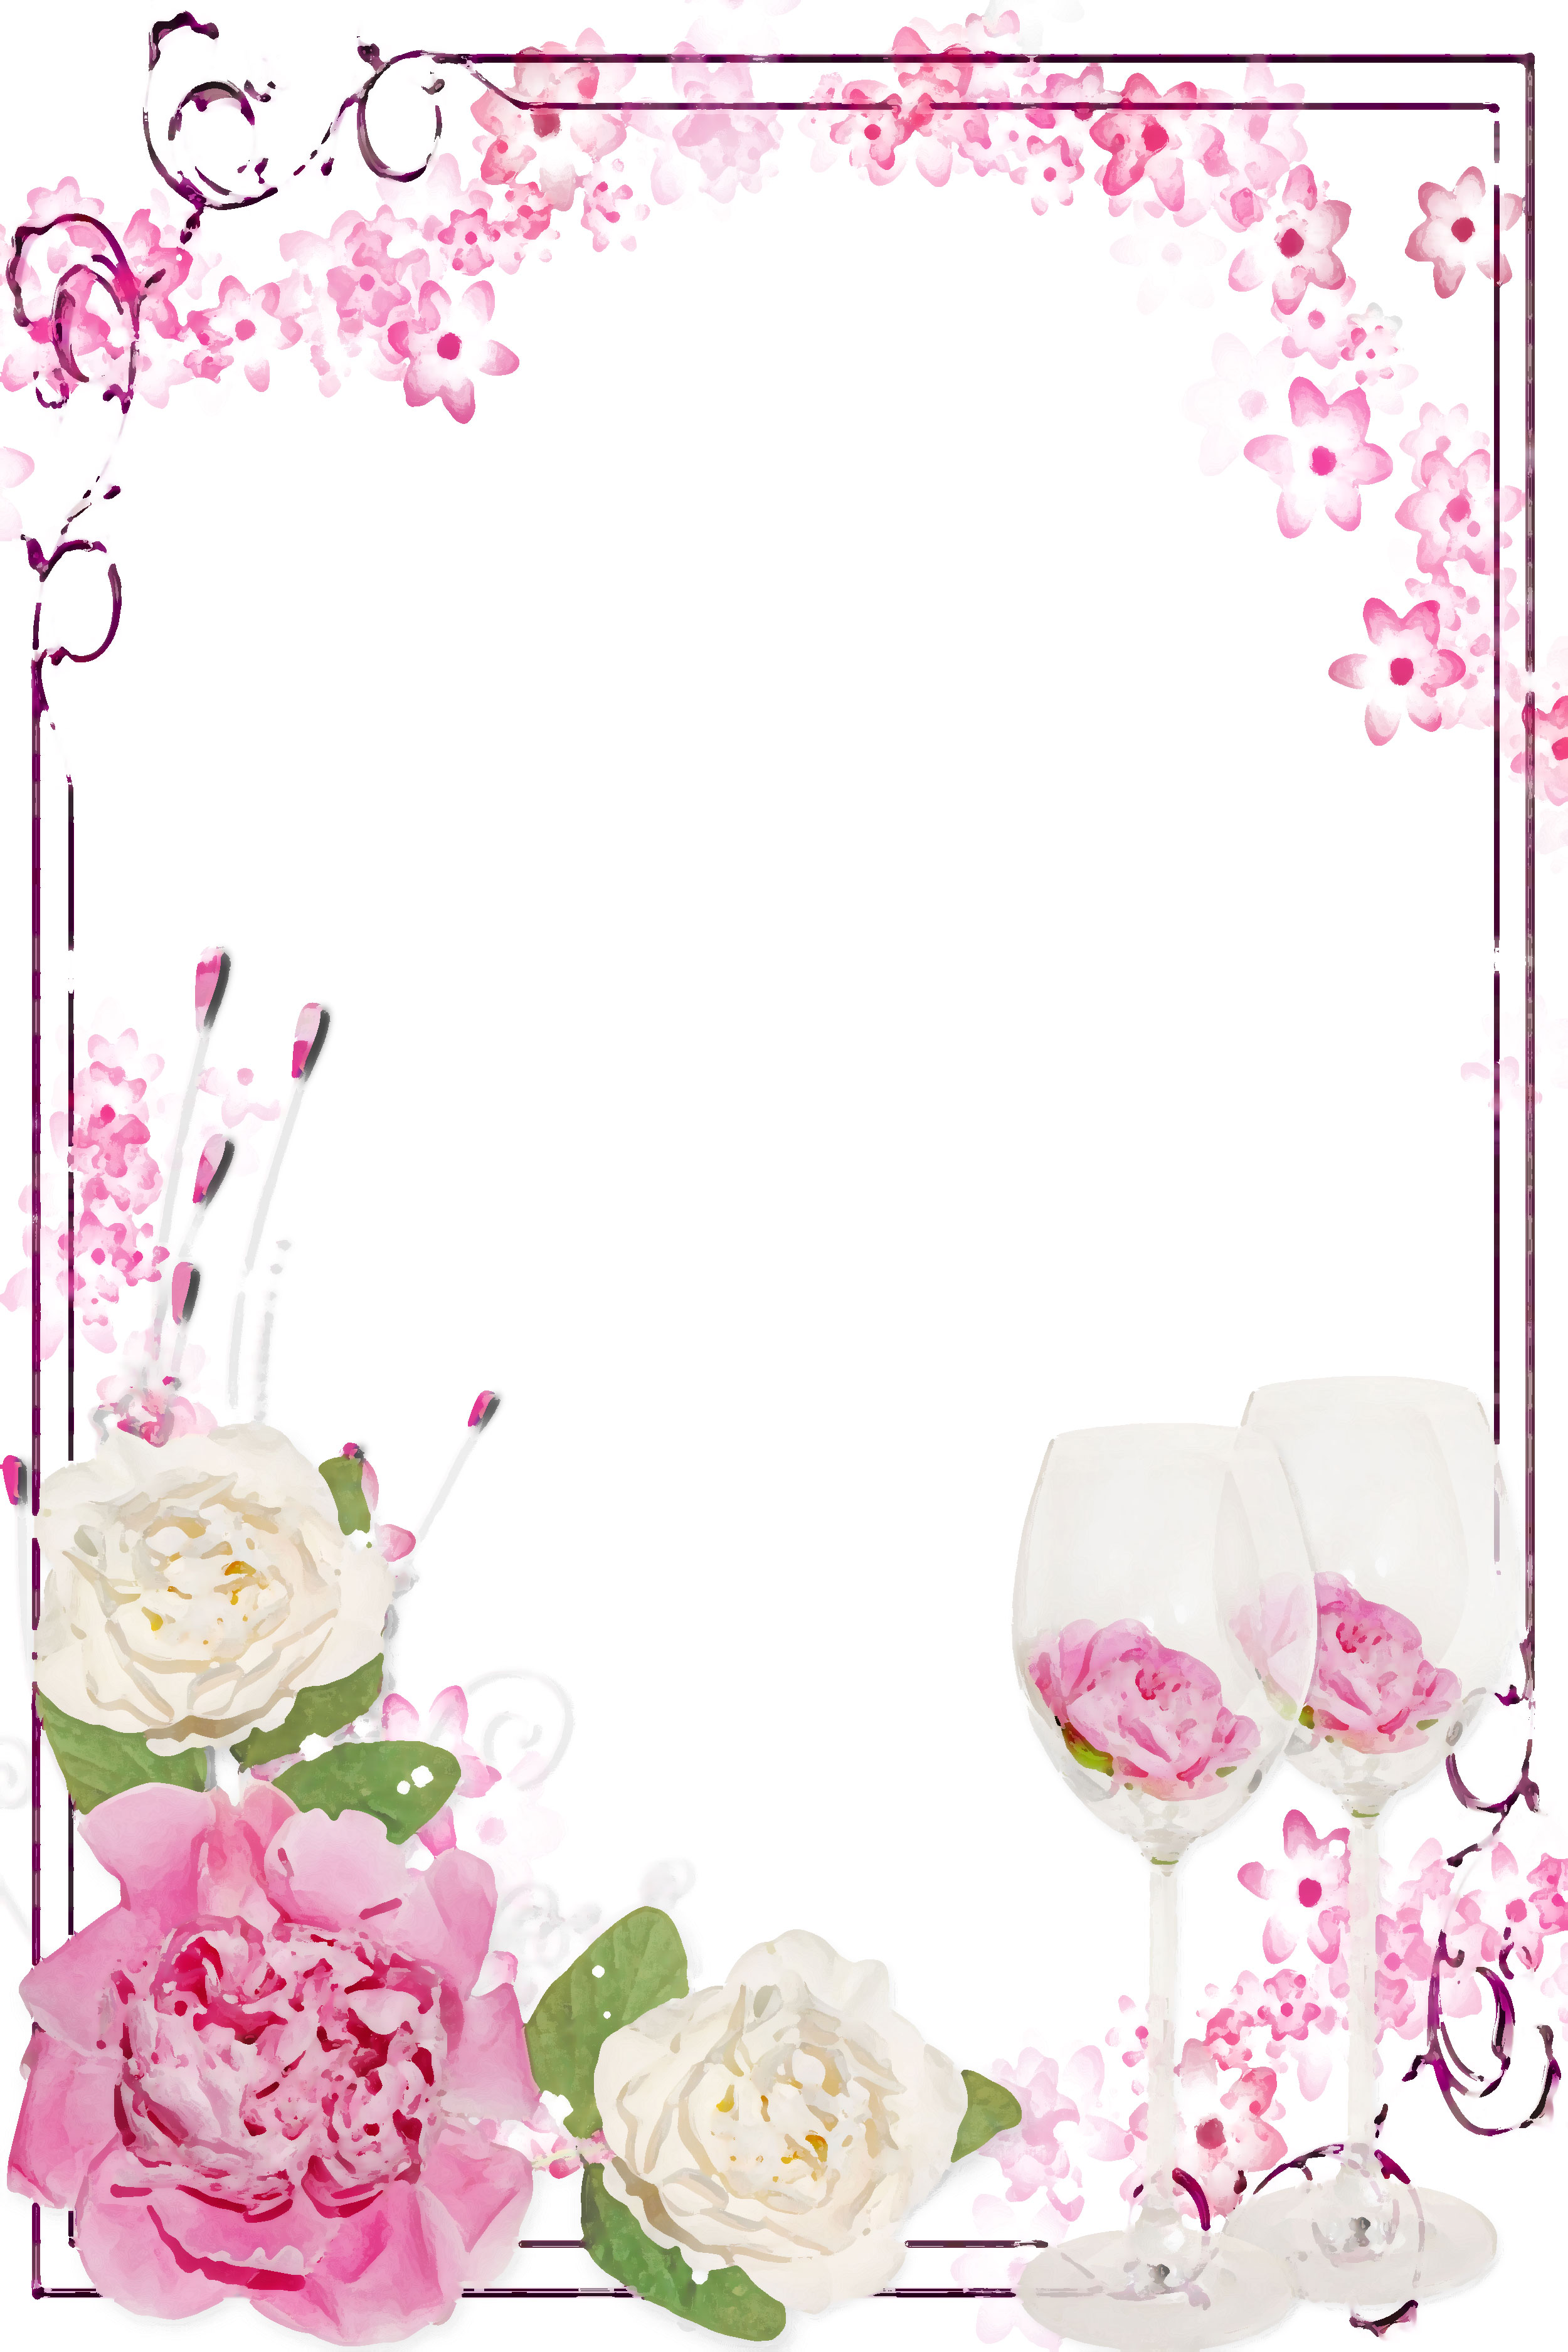 壁紙 背景イラスト 花のフレーム 外枠 No 067 白 ピンク バラ グラス